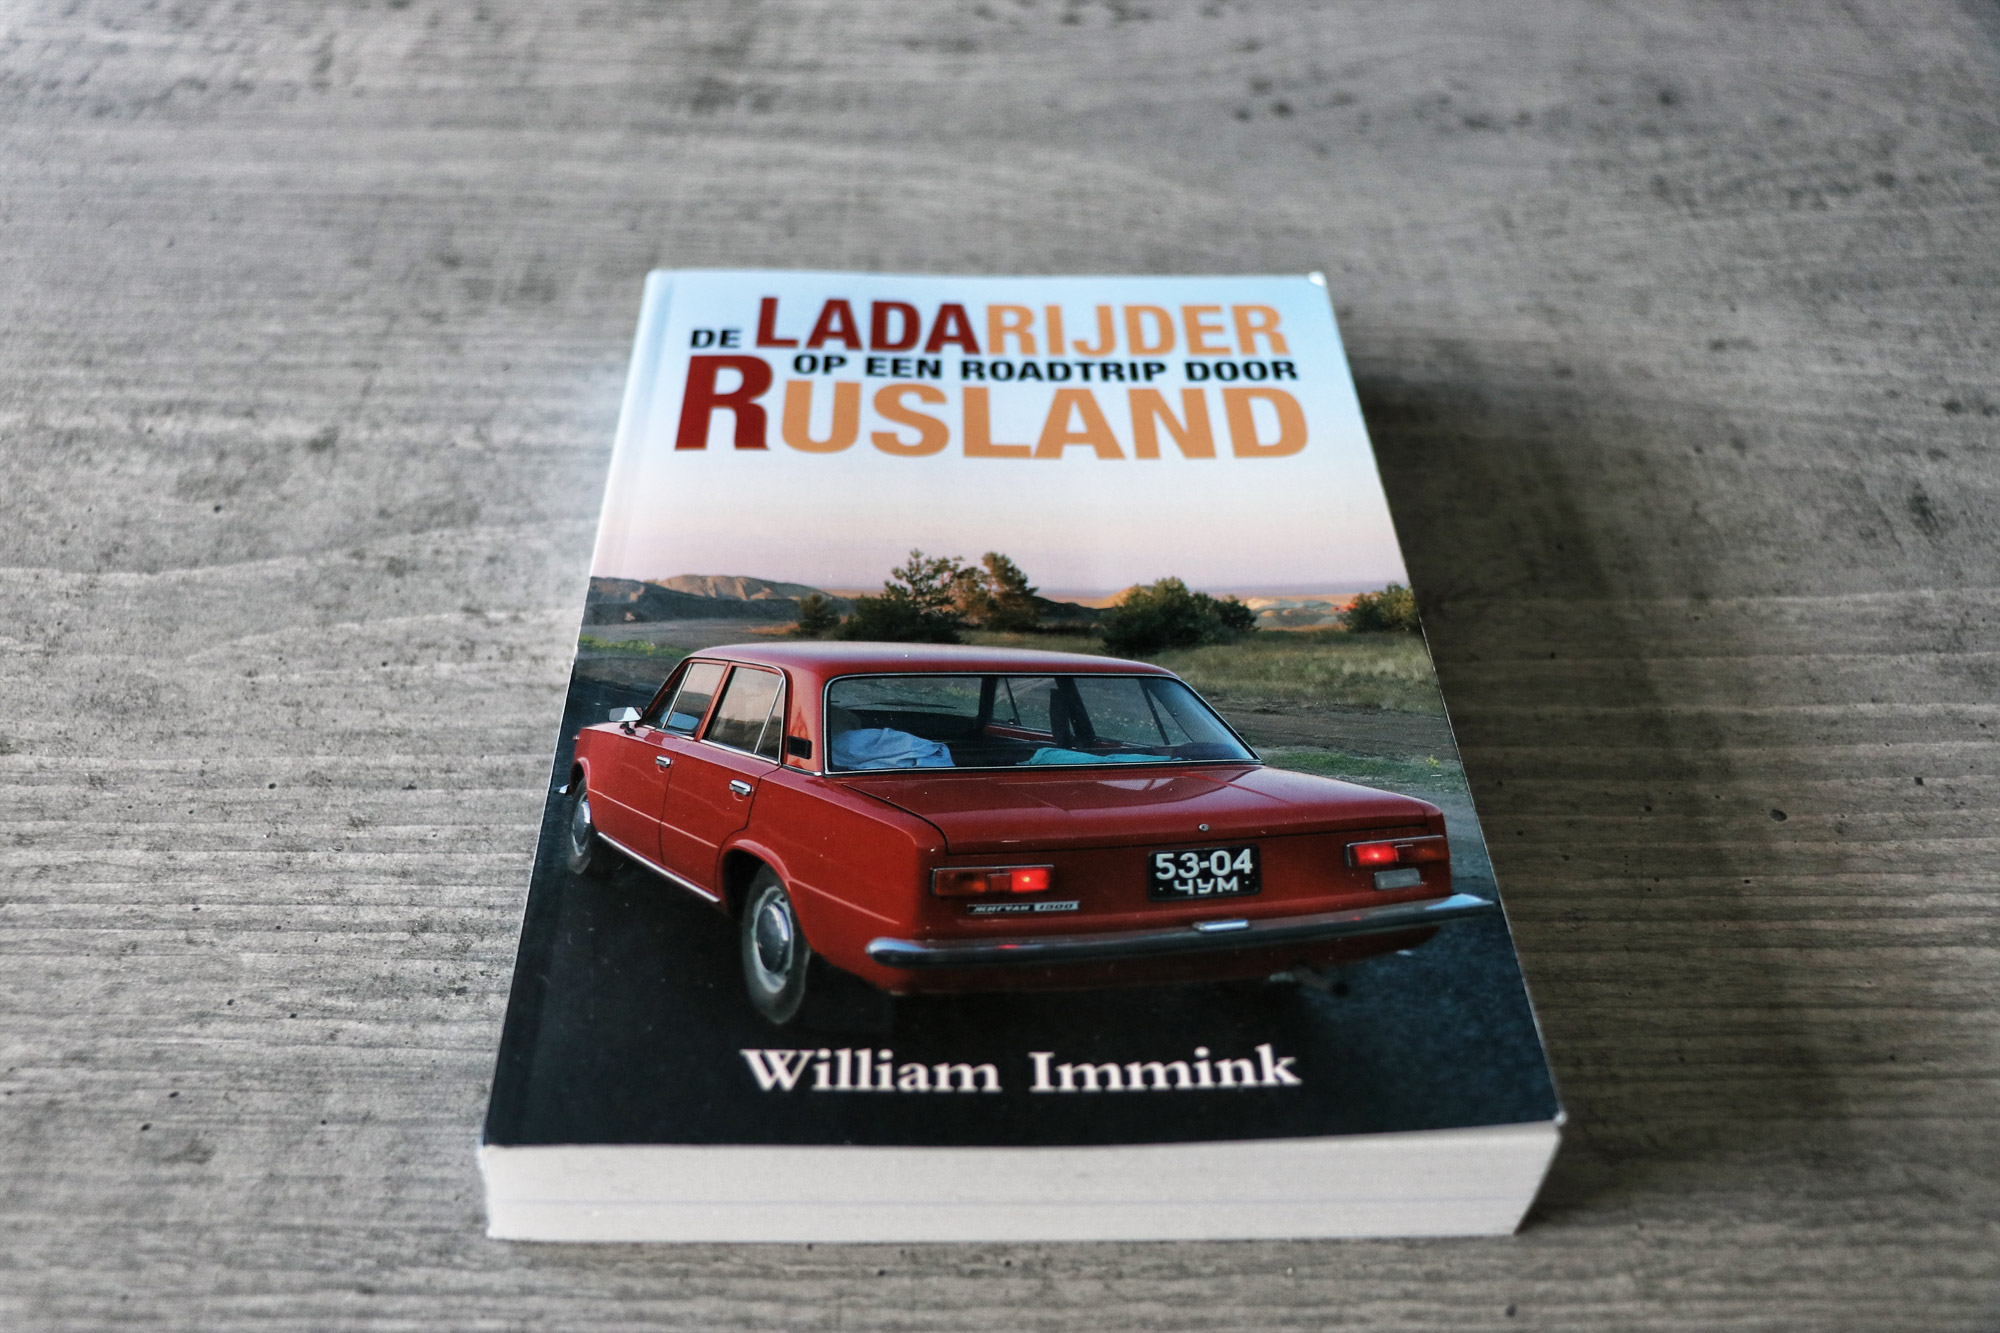 Review: De Ladarijder: op een roadtrip door Rusland, William Immink